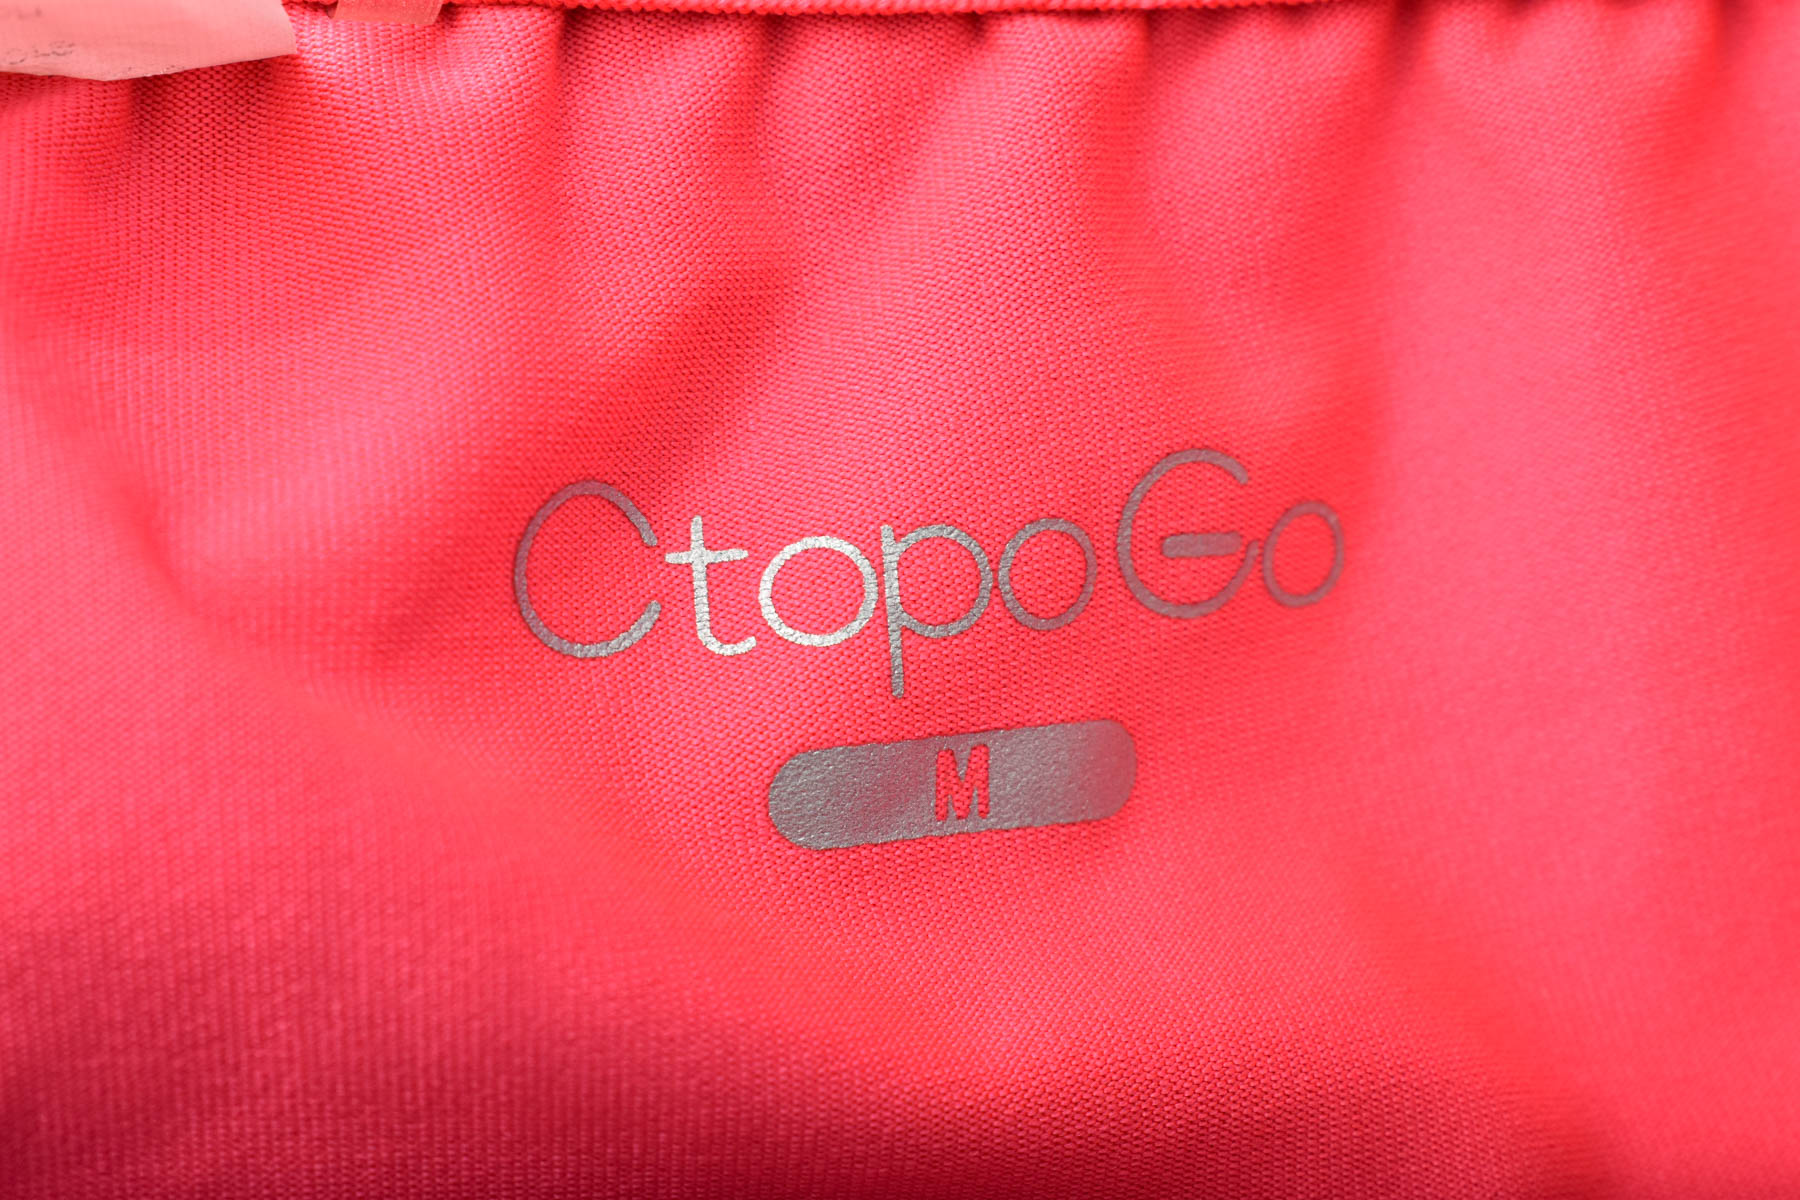 Women's shorts - CtopoGo - 2